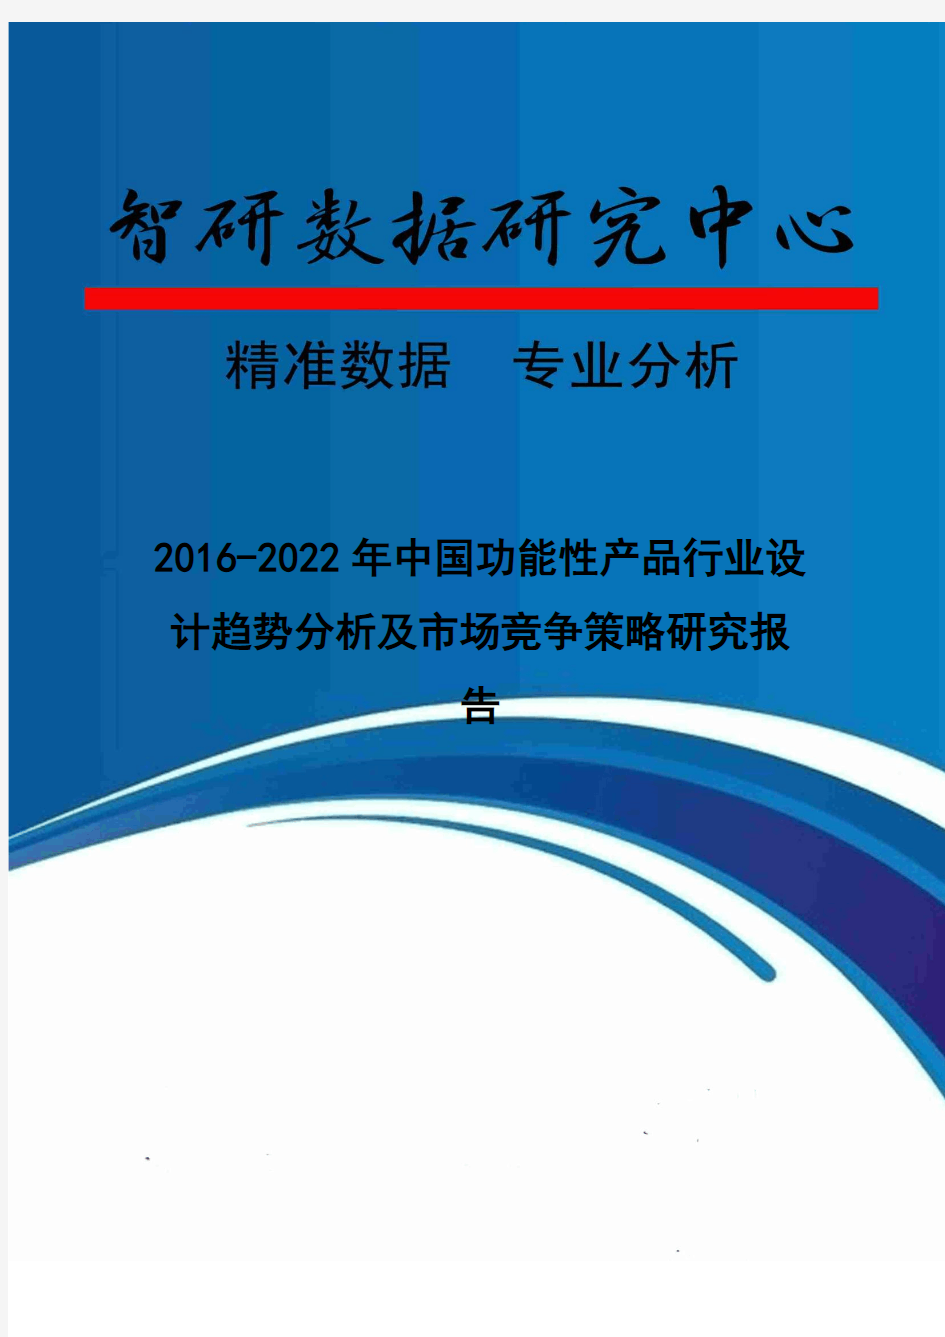 2016-2022年中国功能性产品行业设计趋势分析及市场竞争策略研究报告